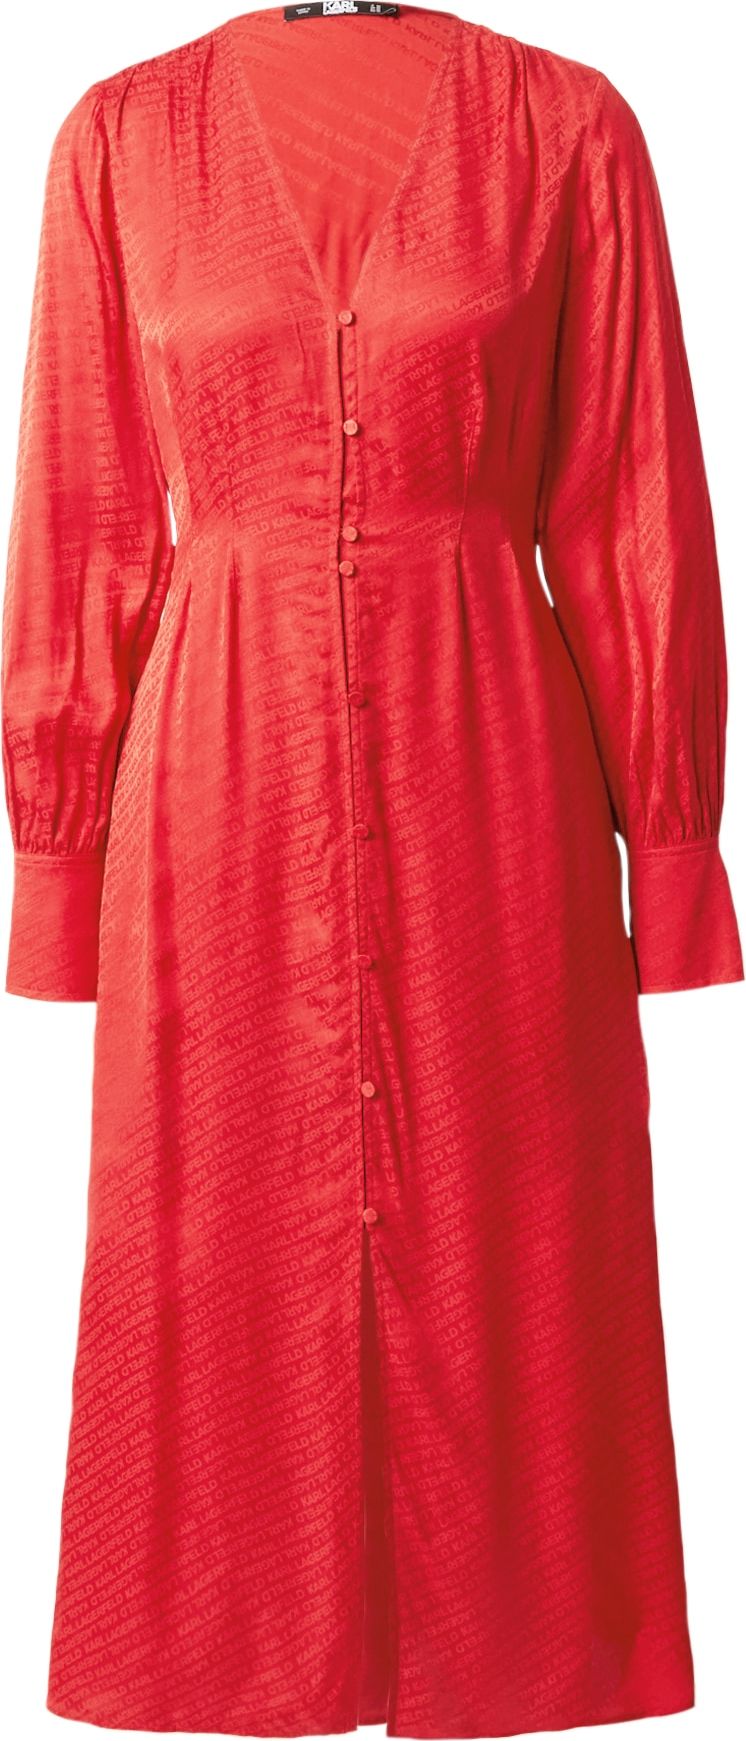 Košilové šaty Karl Lagerfeld červená / rubínově červená